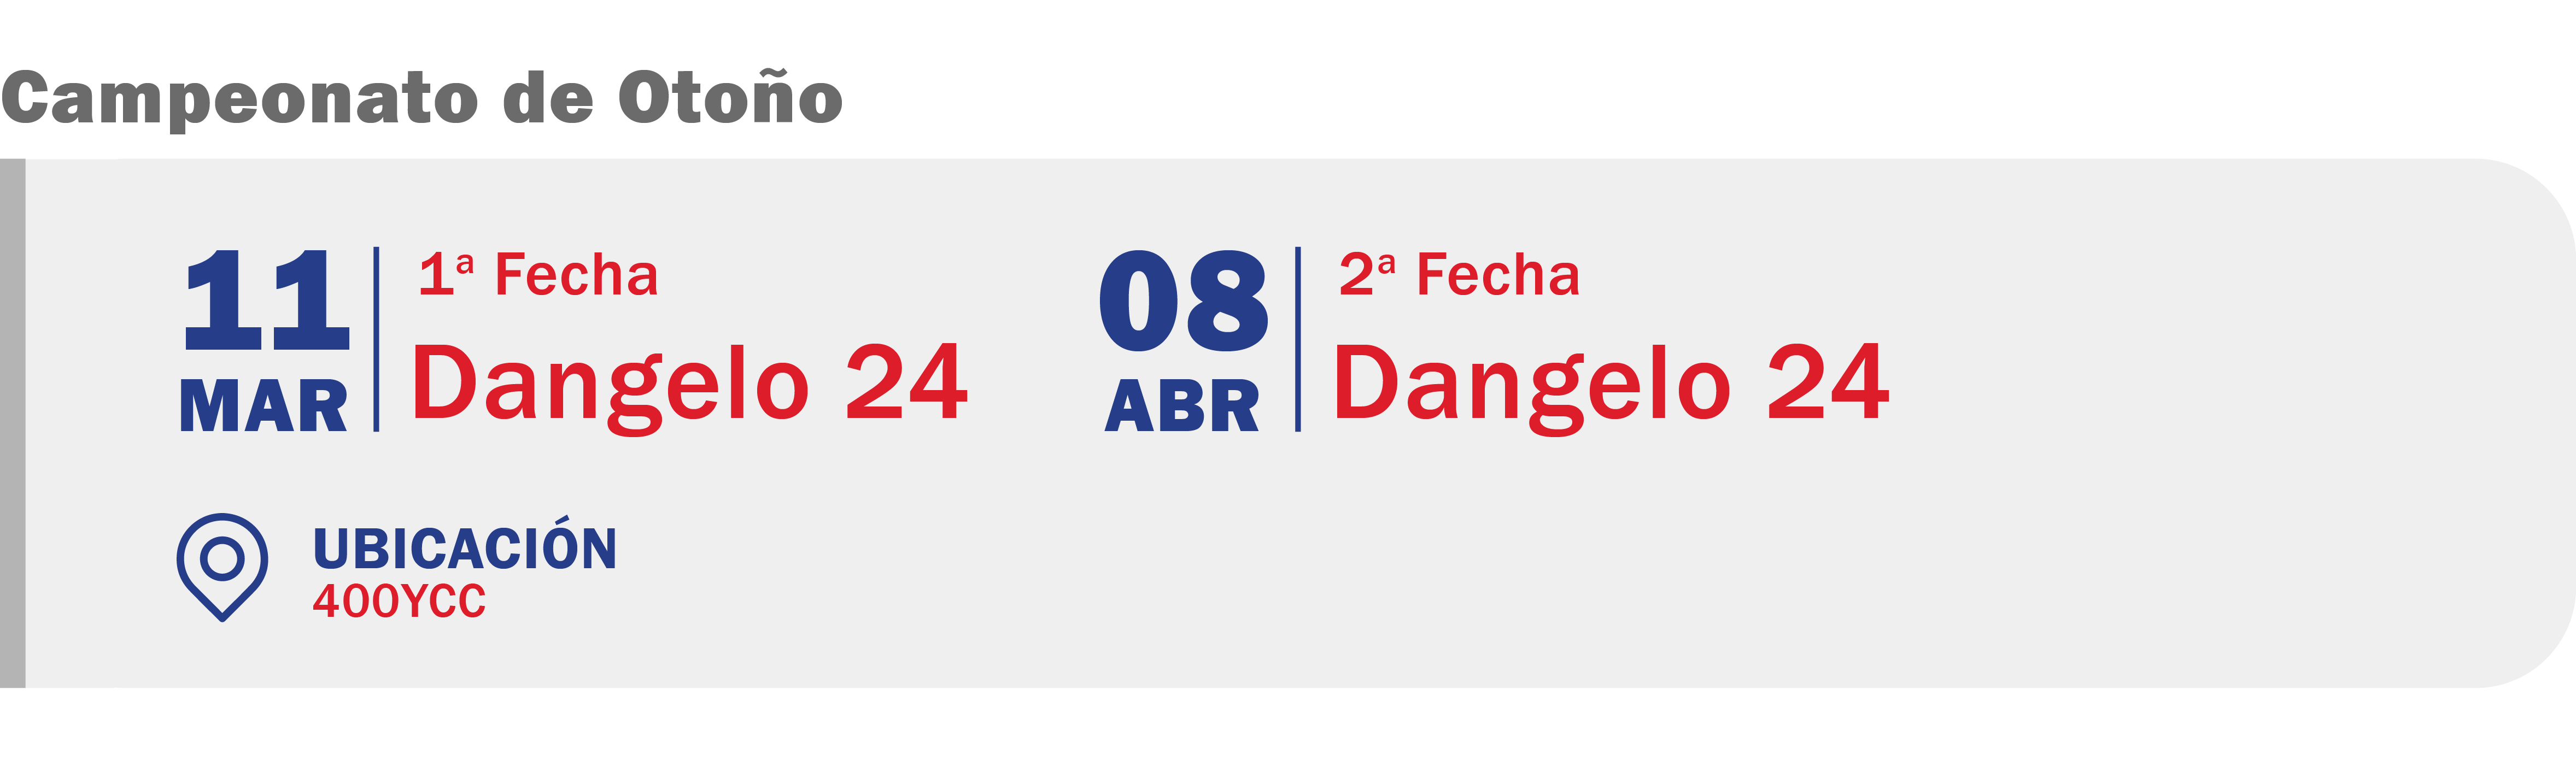 CNC - Calendario Web Plantillas_Dangelo 24-04